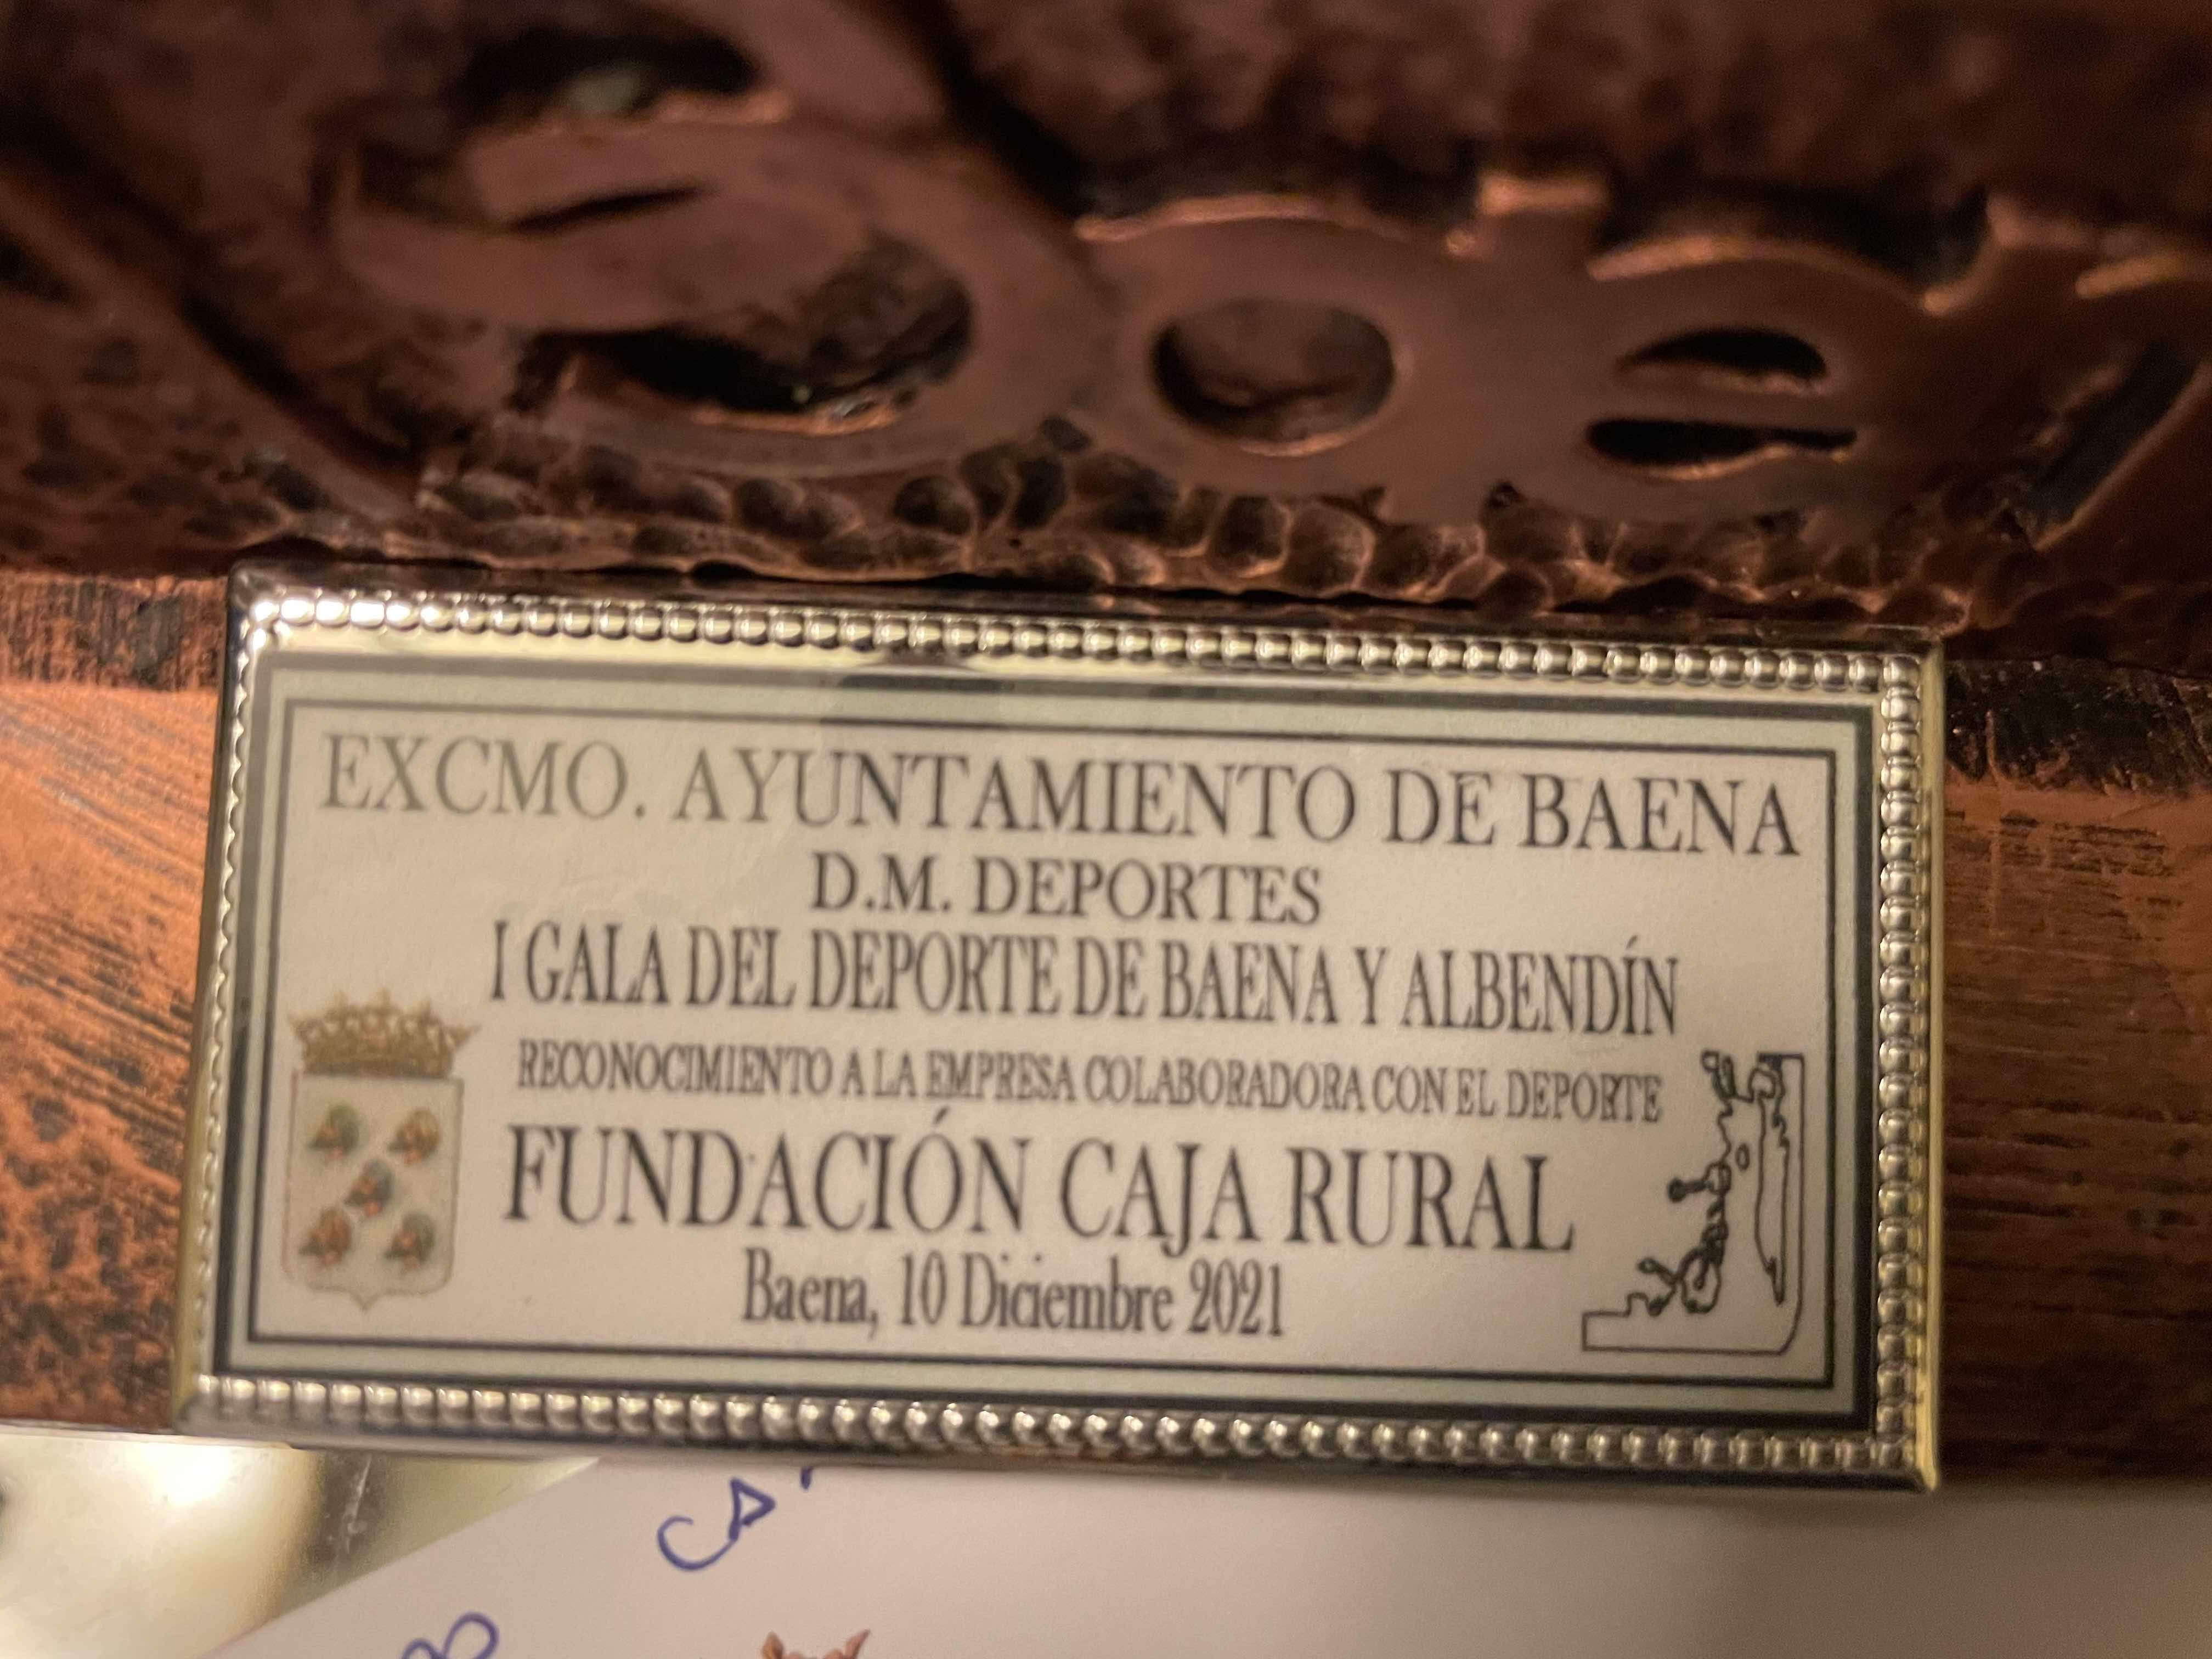 Reconocimiento a la Fundación Caja Rural de Baena por su colaboración con el deporte